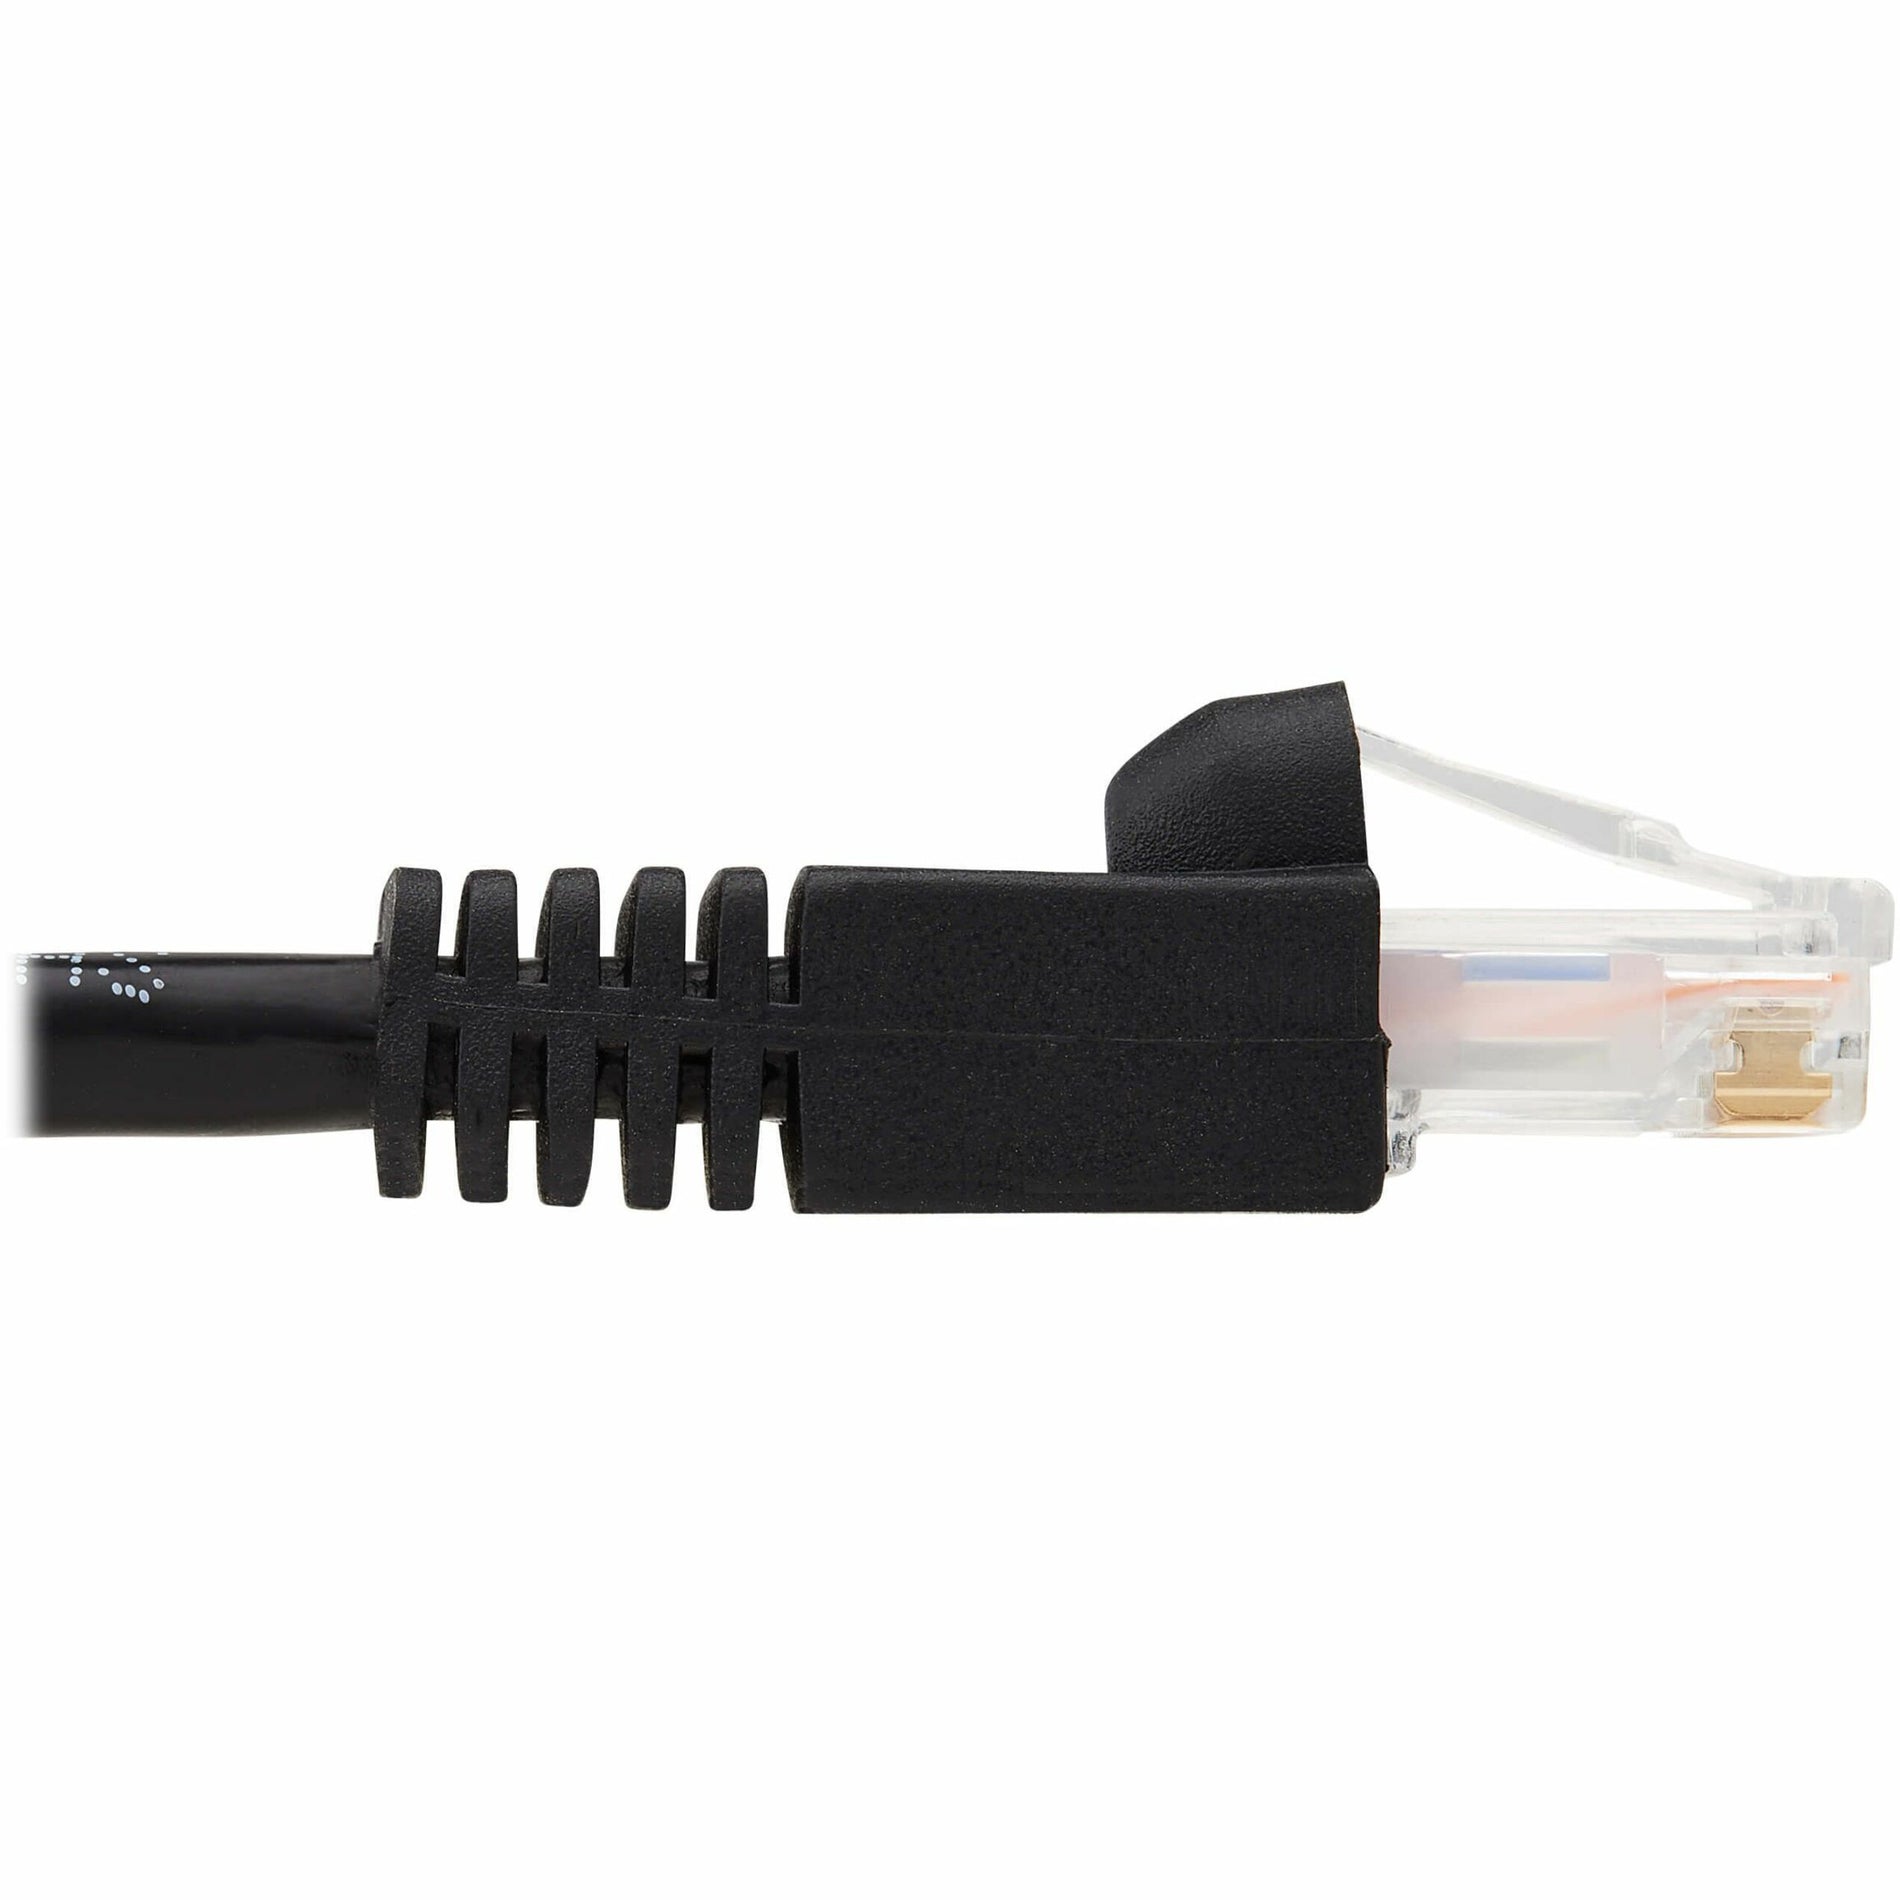 Tripp Lite N261-014-BK Cat.6a Patch Network Cable, 14 ft, 10 Gbit/s, RJ-45 Male Connectors, Black